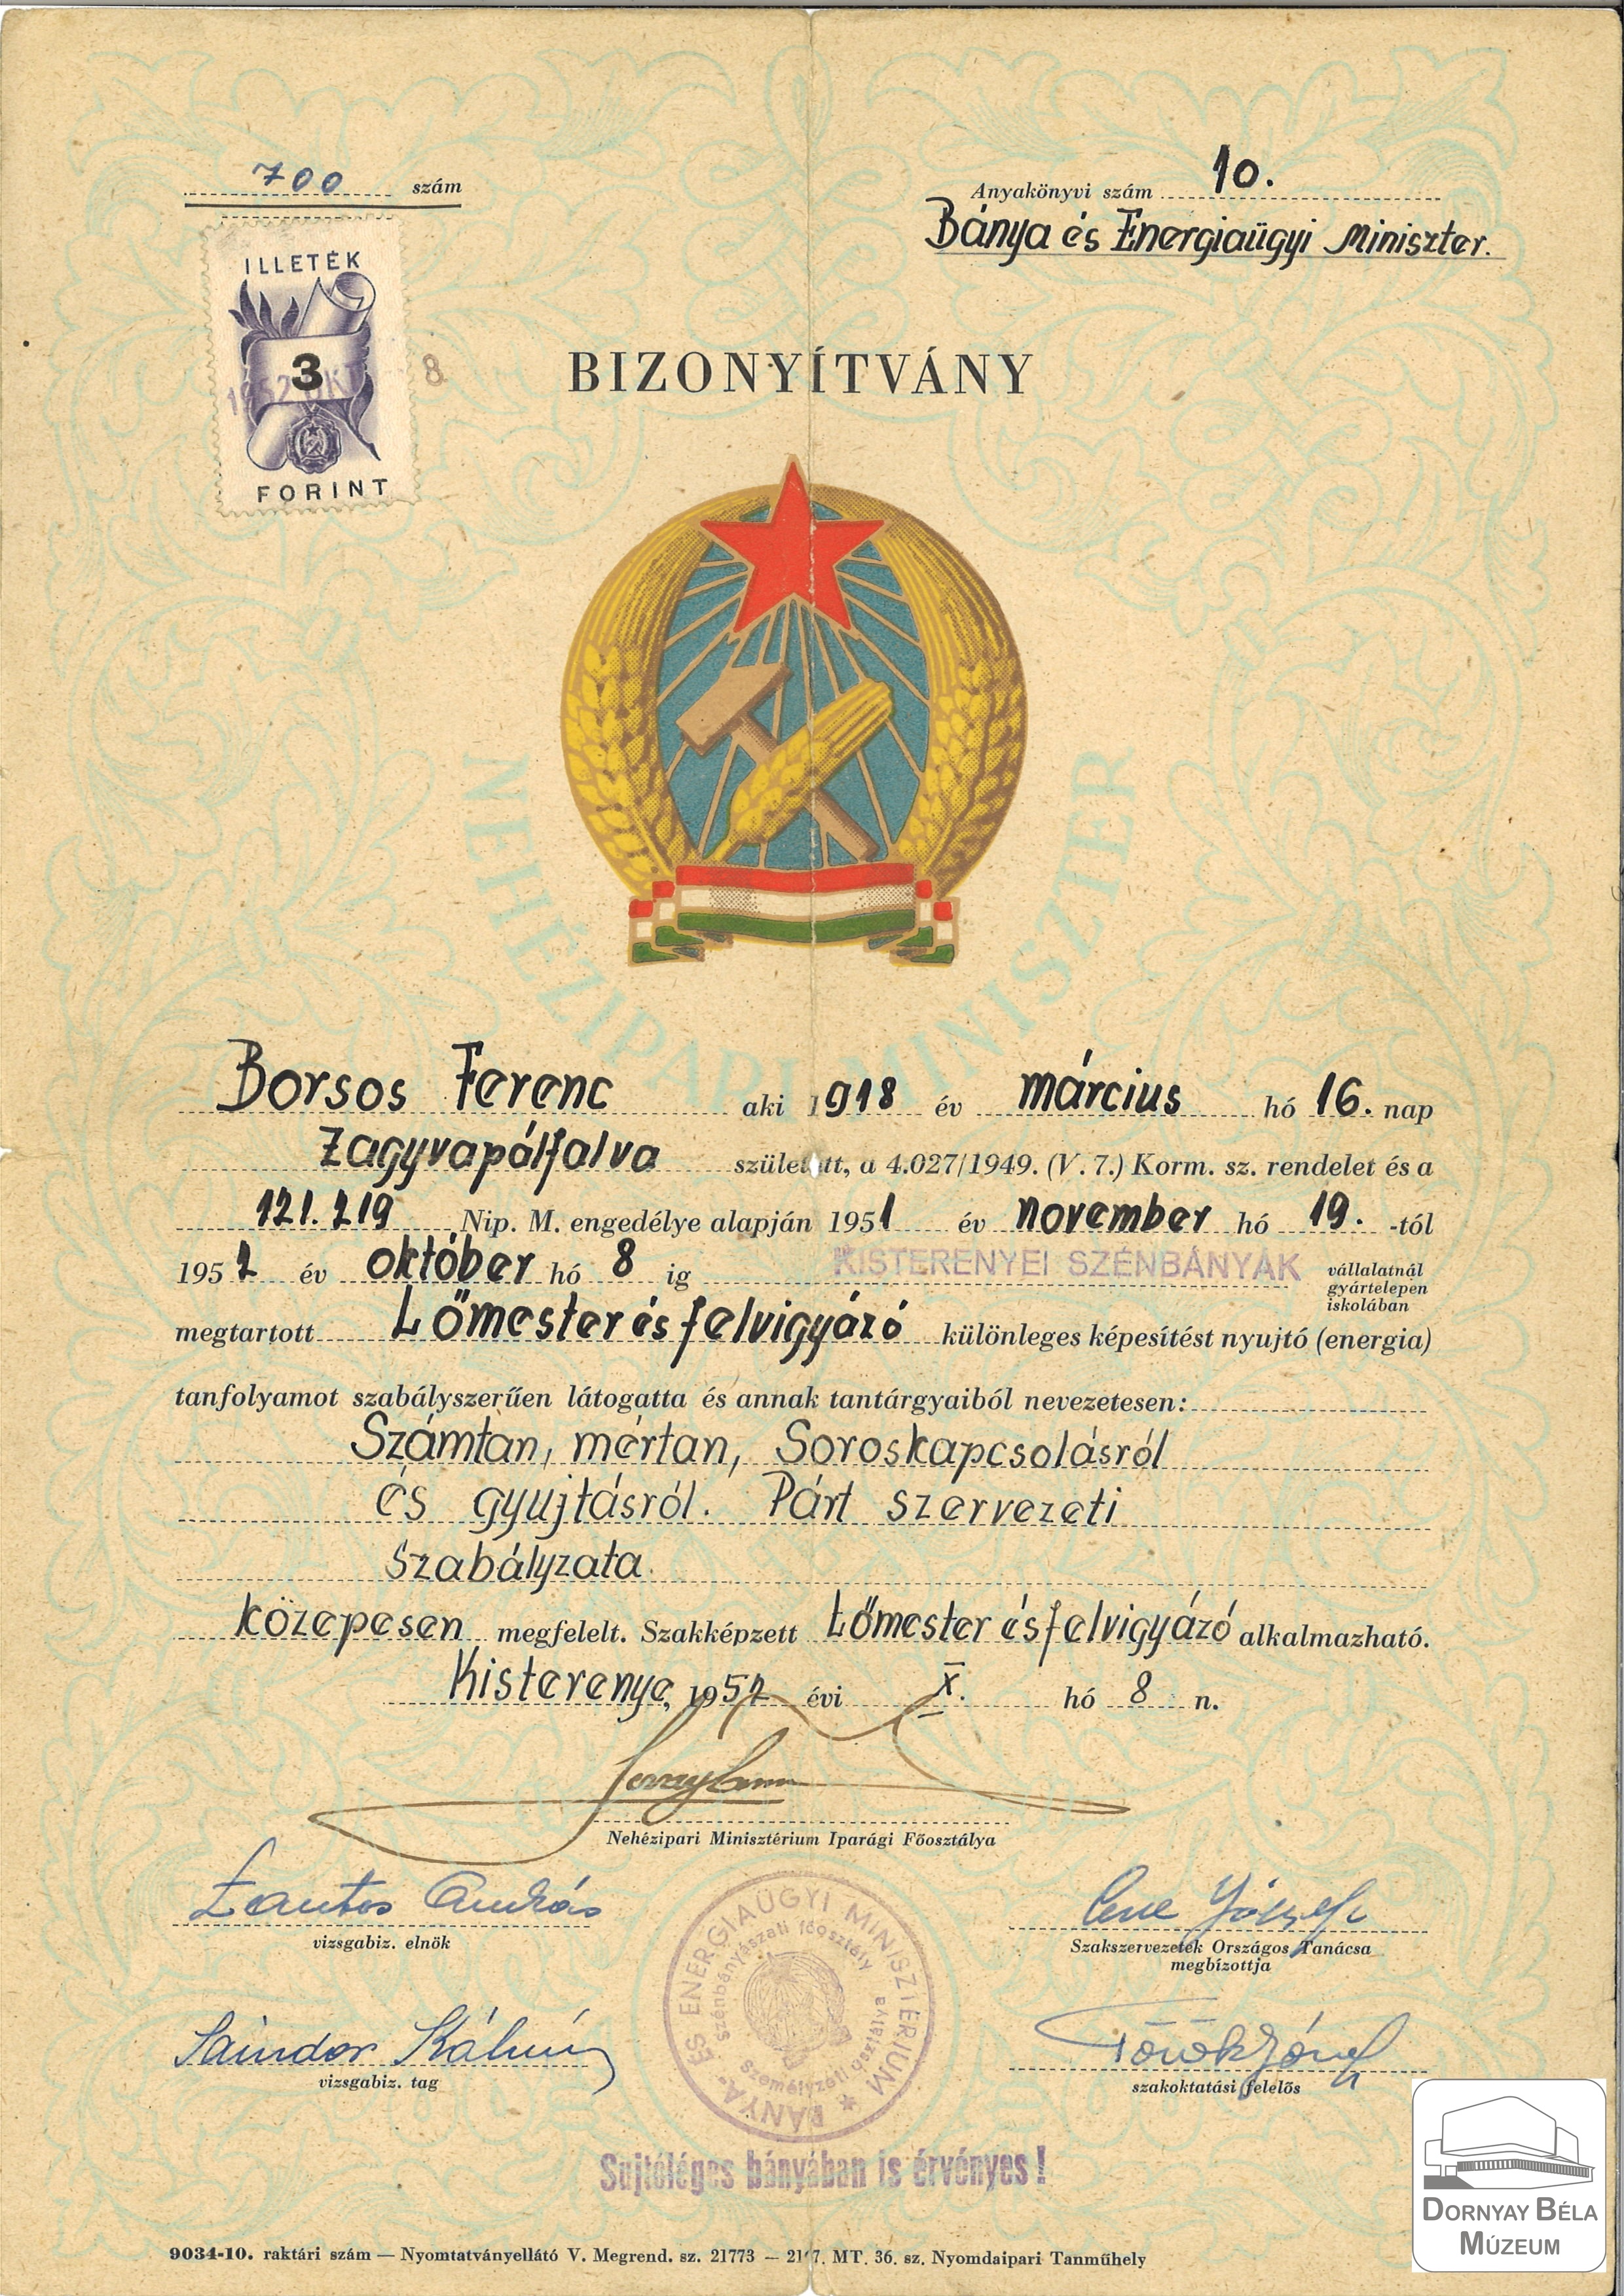 Borsos Ferenc lőmesteri bizonyítványa (Dornyay Béla Múzeum, Salgótarján CC BY-NC-SA)